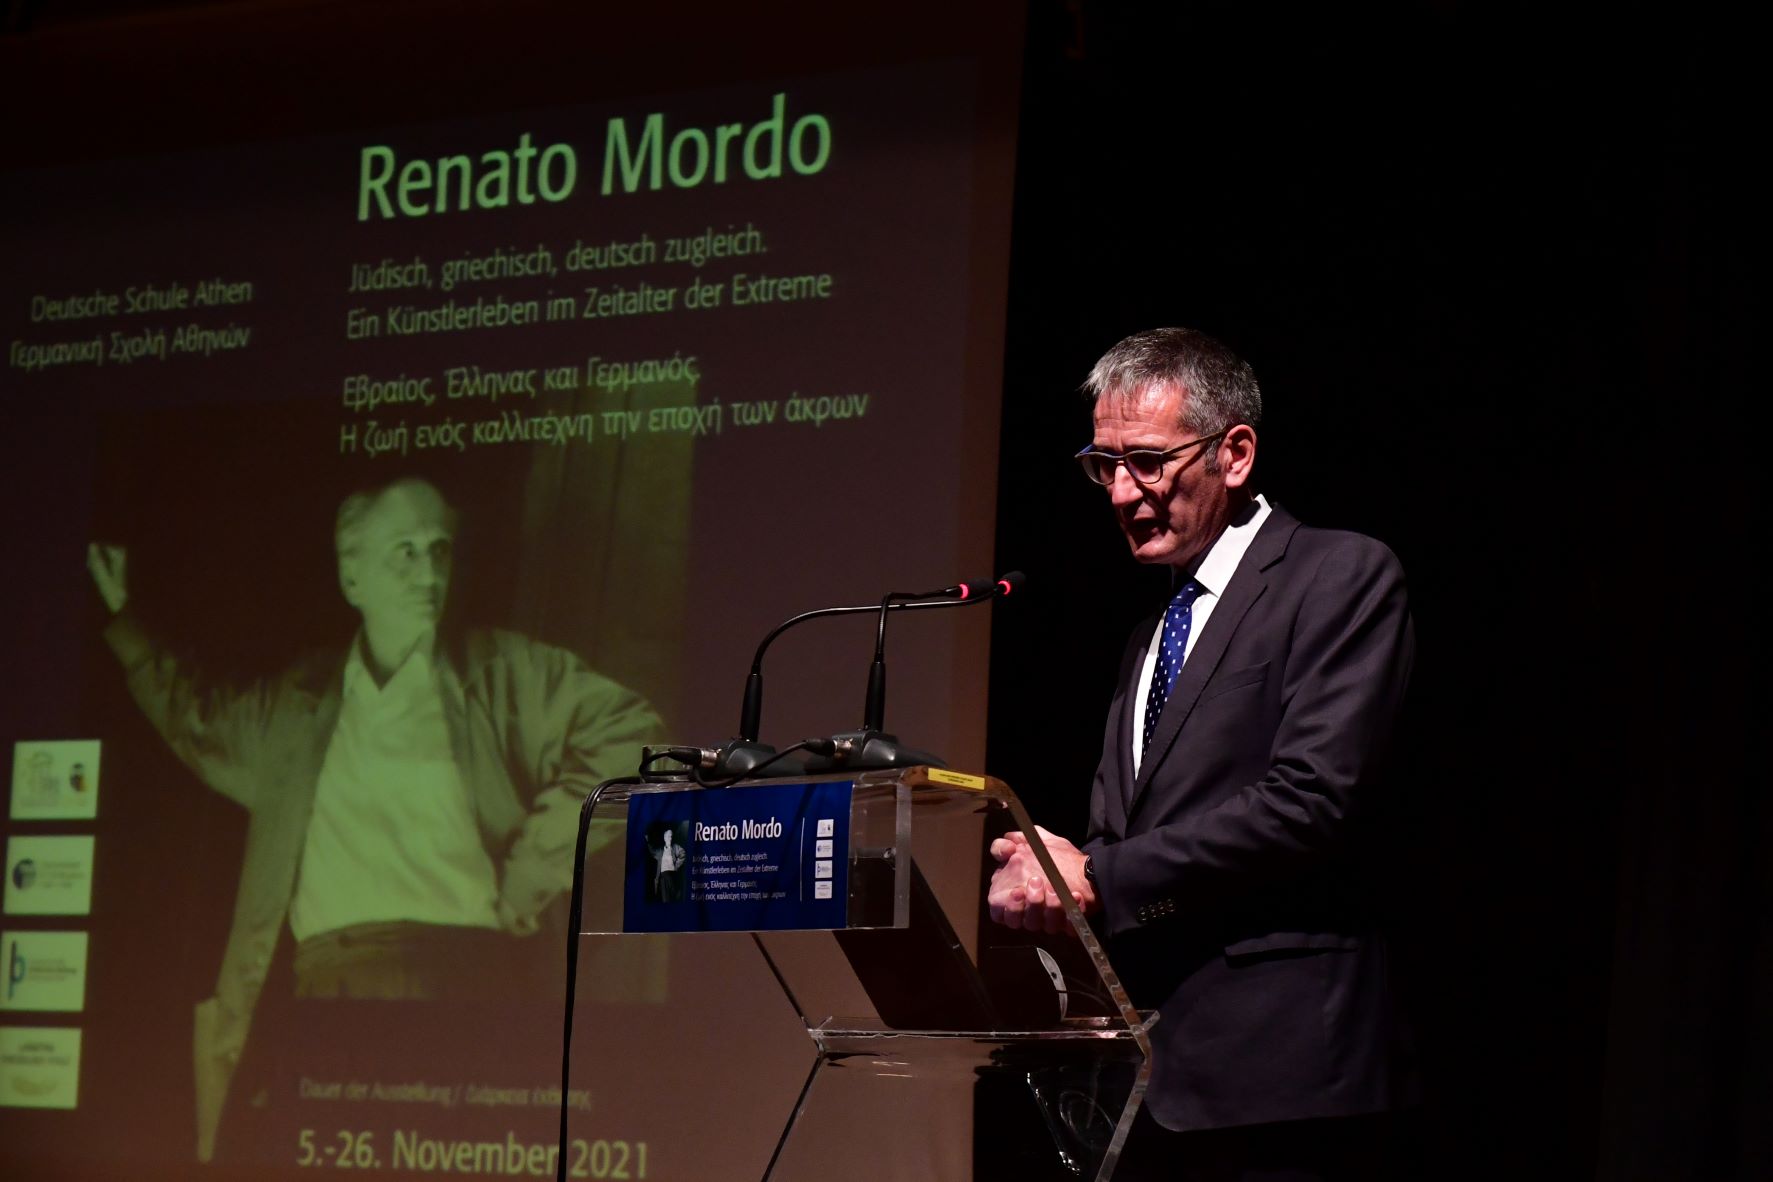 Renato Mordo